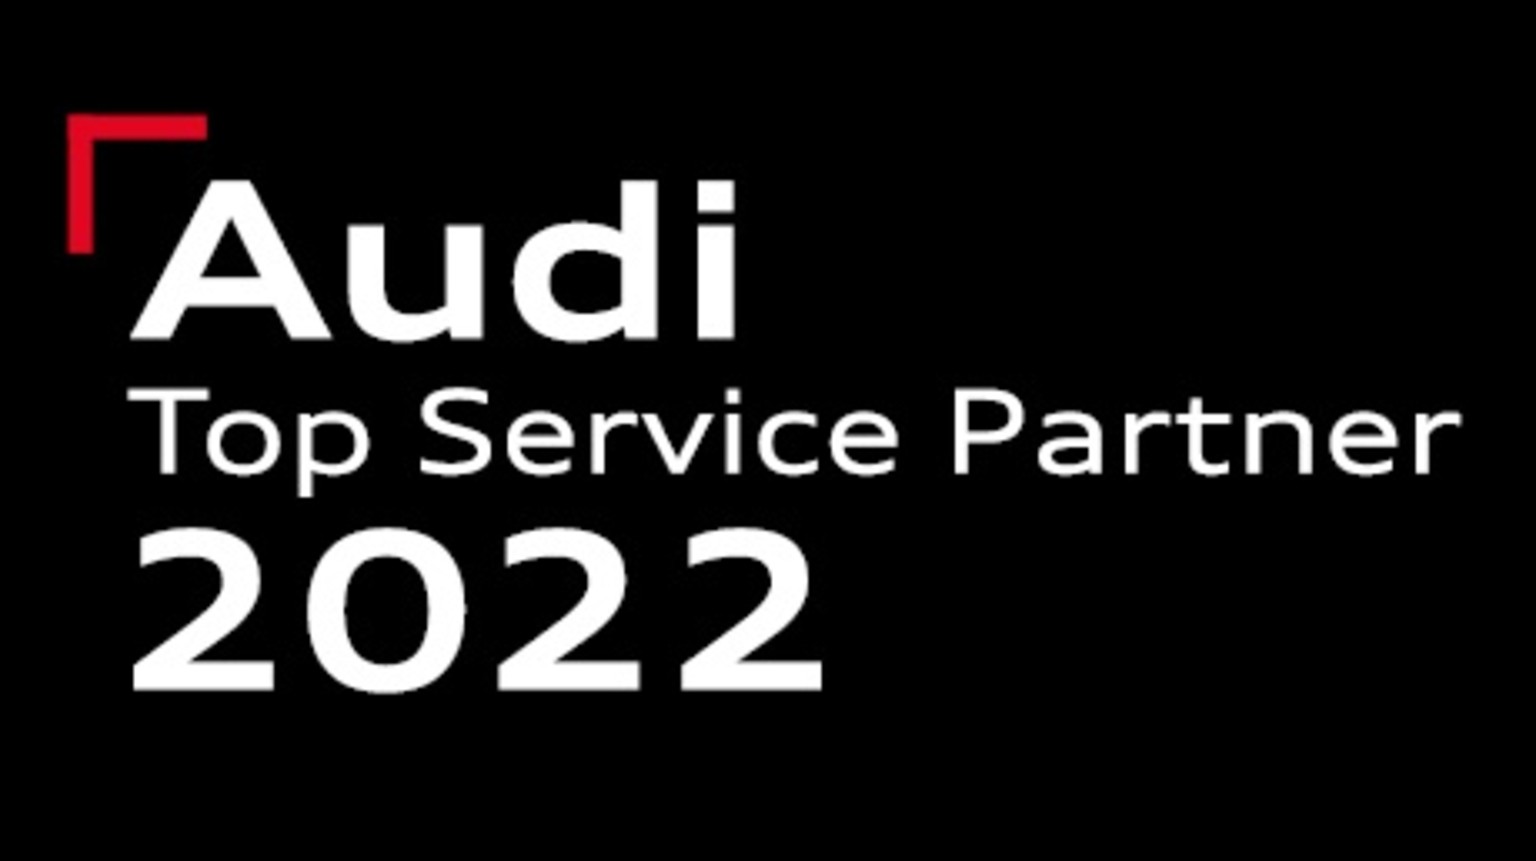 Audi Top Service Partner 2022